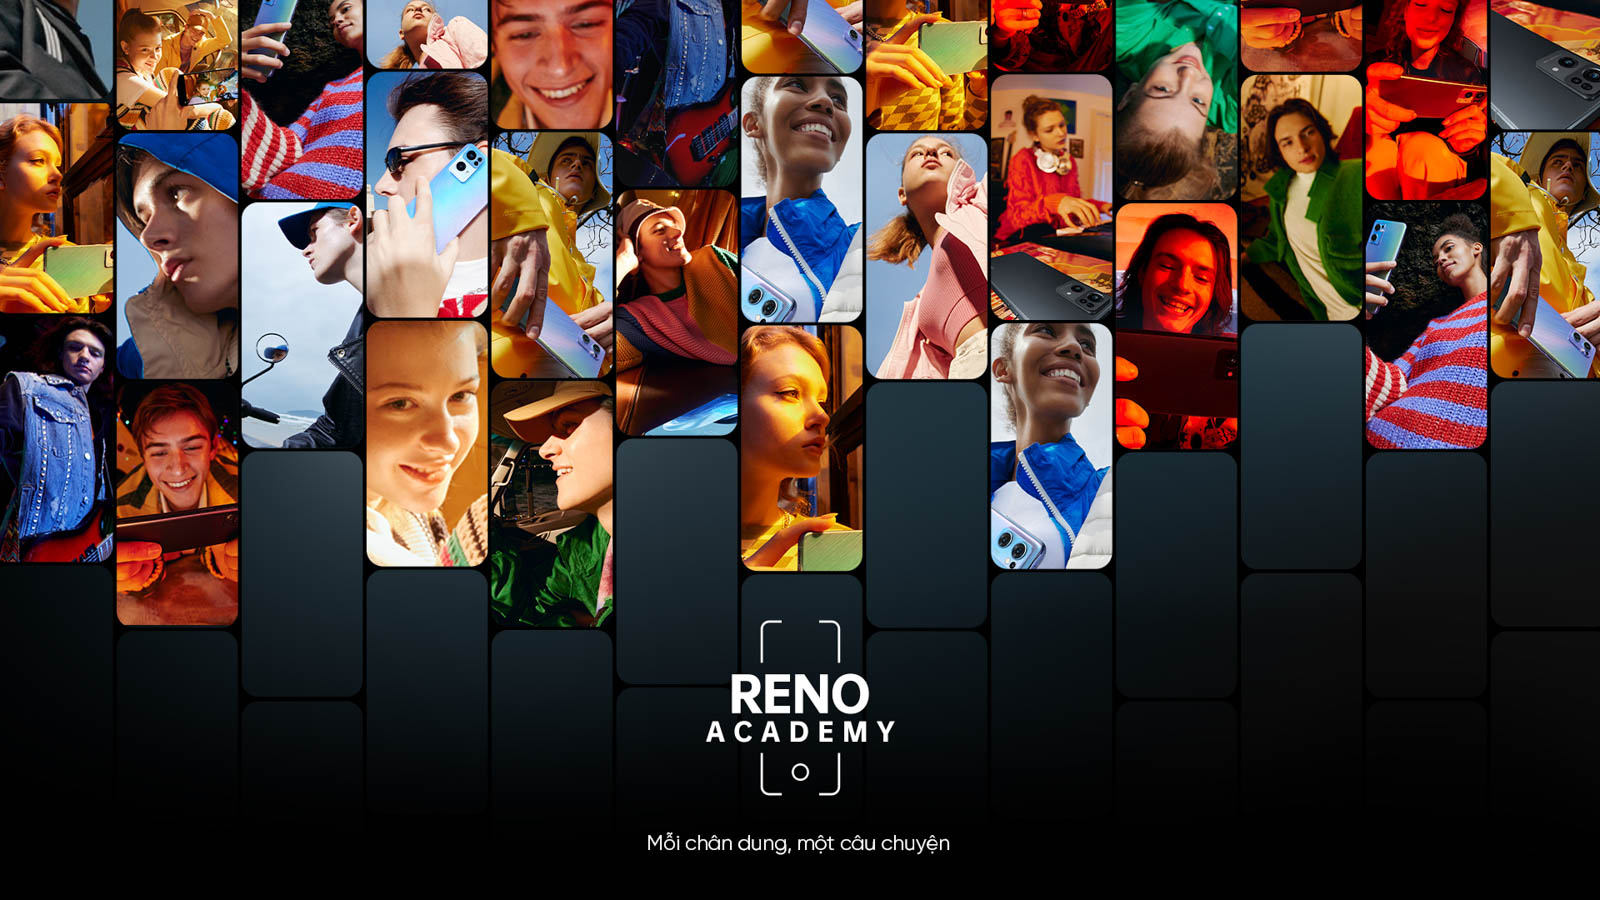 OPPO chính thức khởi động Reno Academy – Sân chơi cho nhiếp ảnh di động